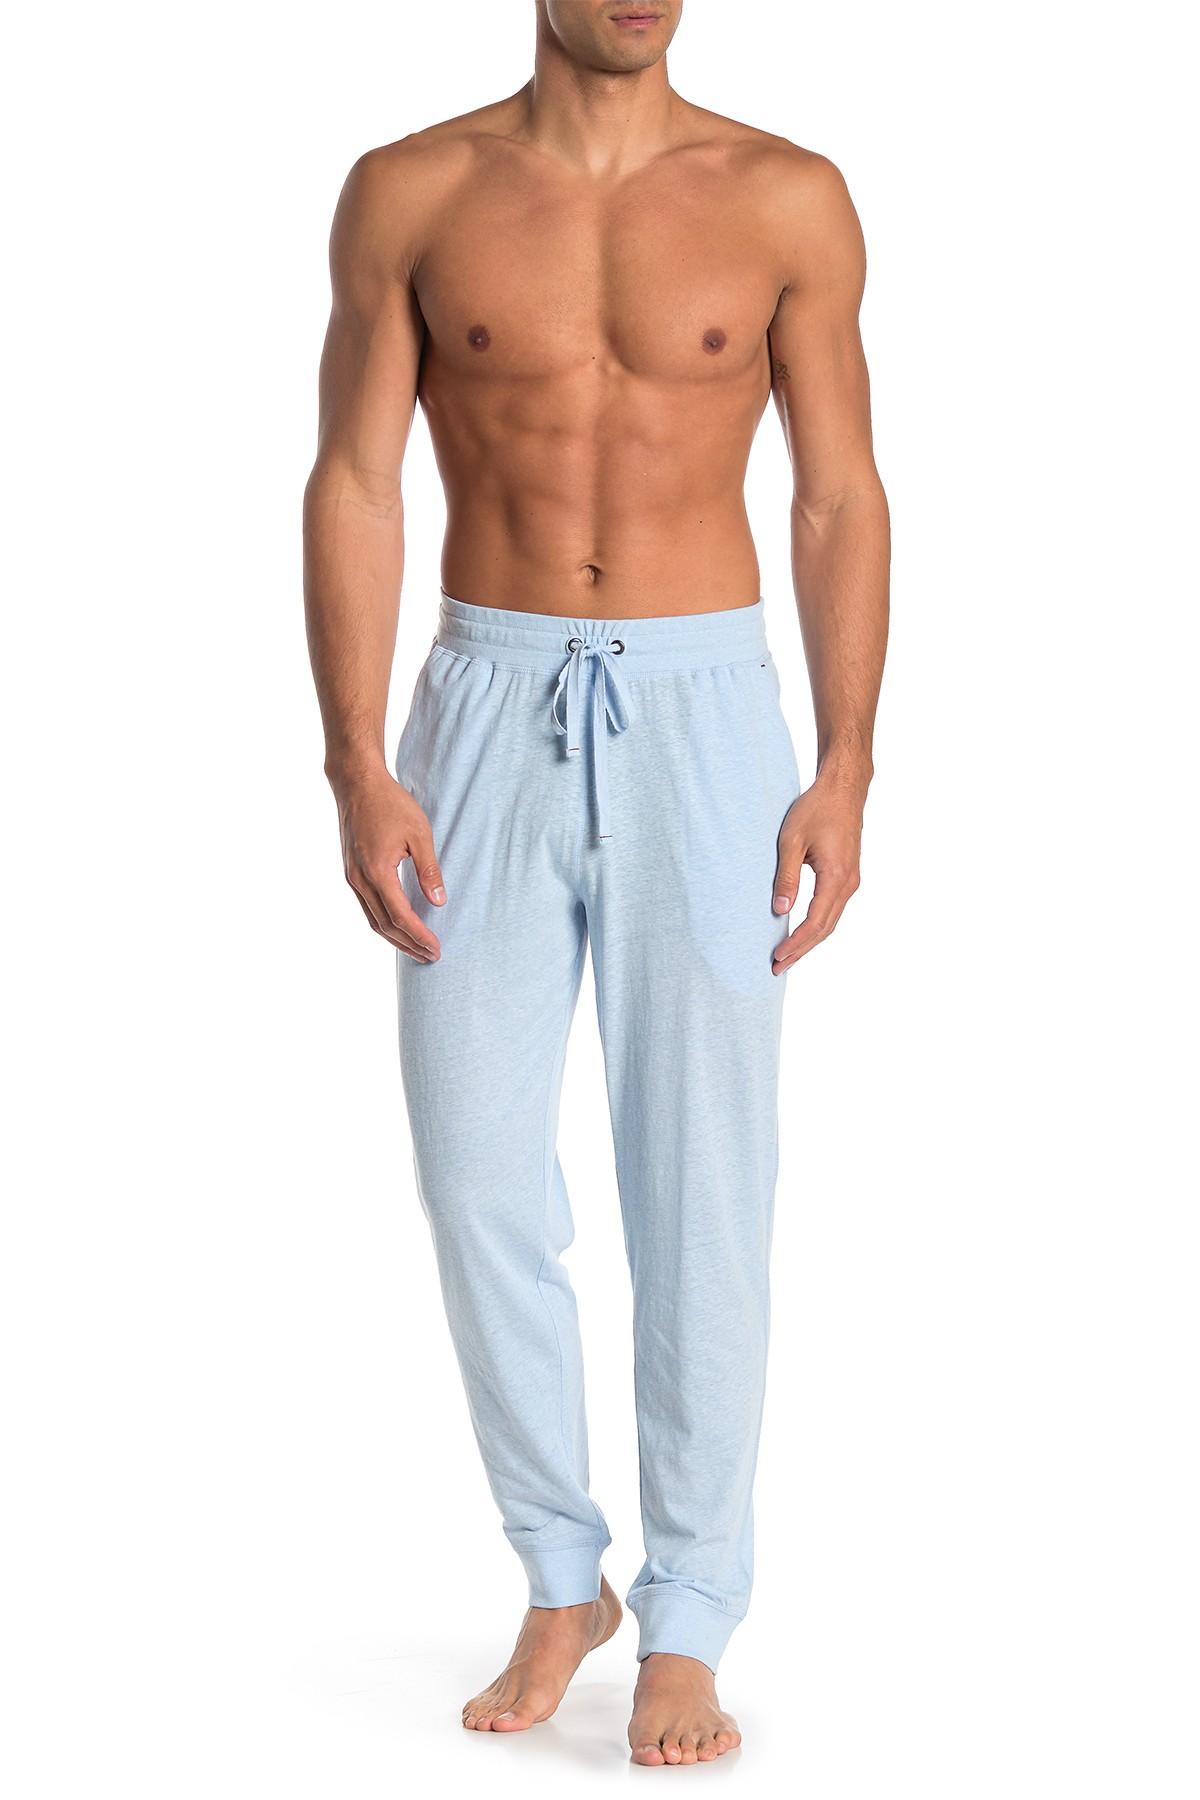 Daniel Buchler Lounge Pants in Blue for Men - Lyst